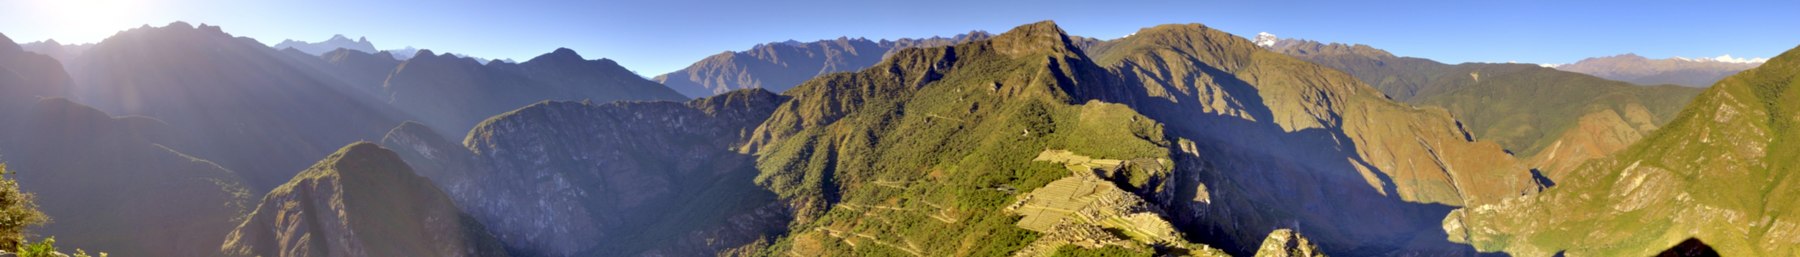 Uitzicht over de Andes in Peru, met Machu Picchu op de voorgrond.